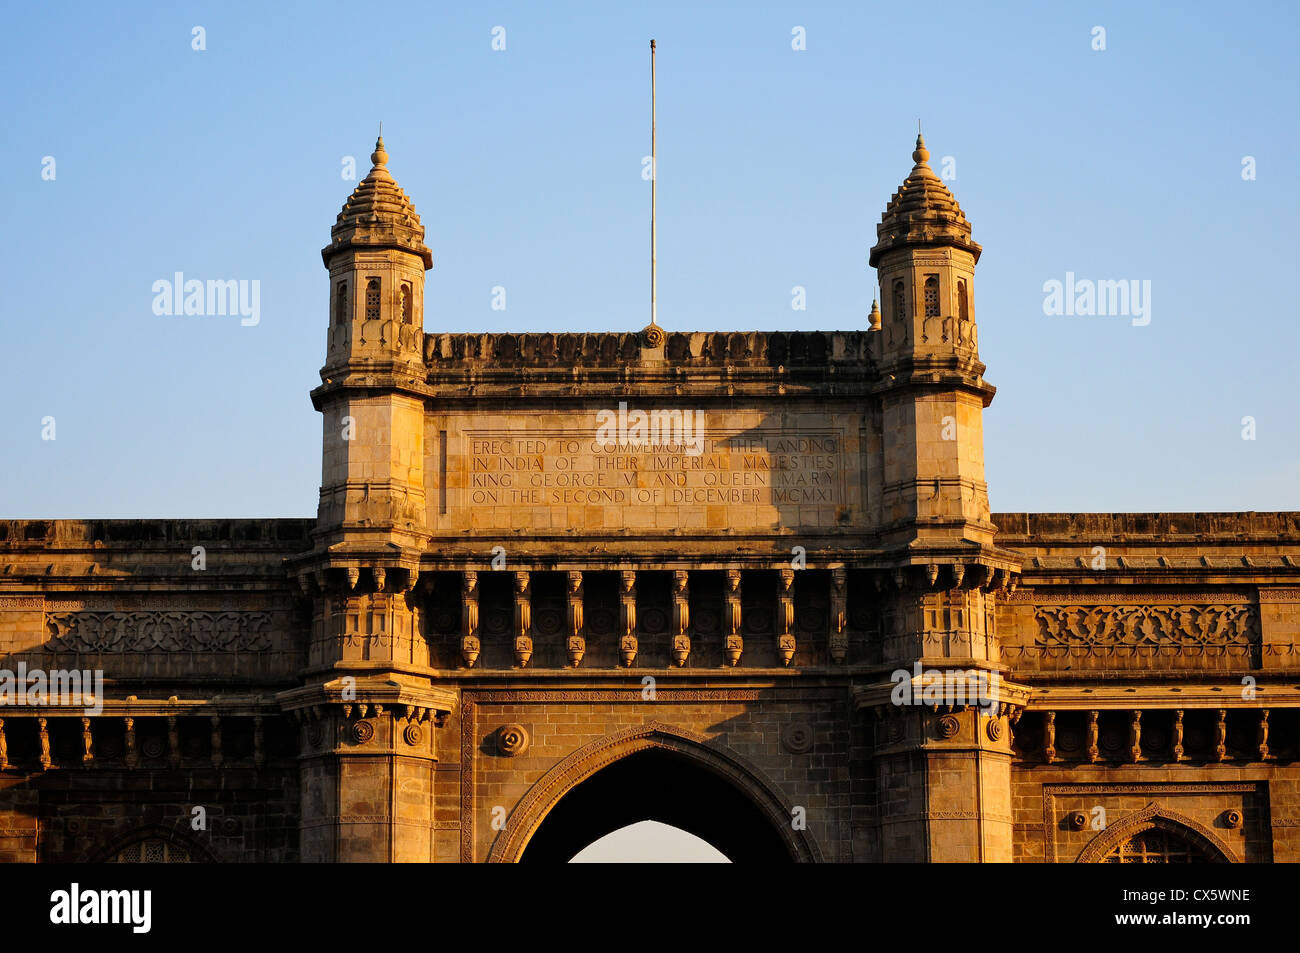 Gateway of India monument, Mumbai, India Stock Photo